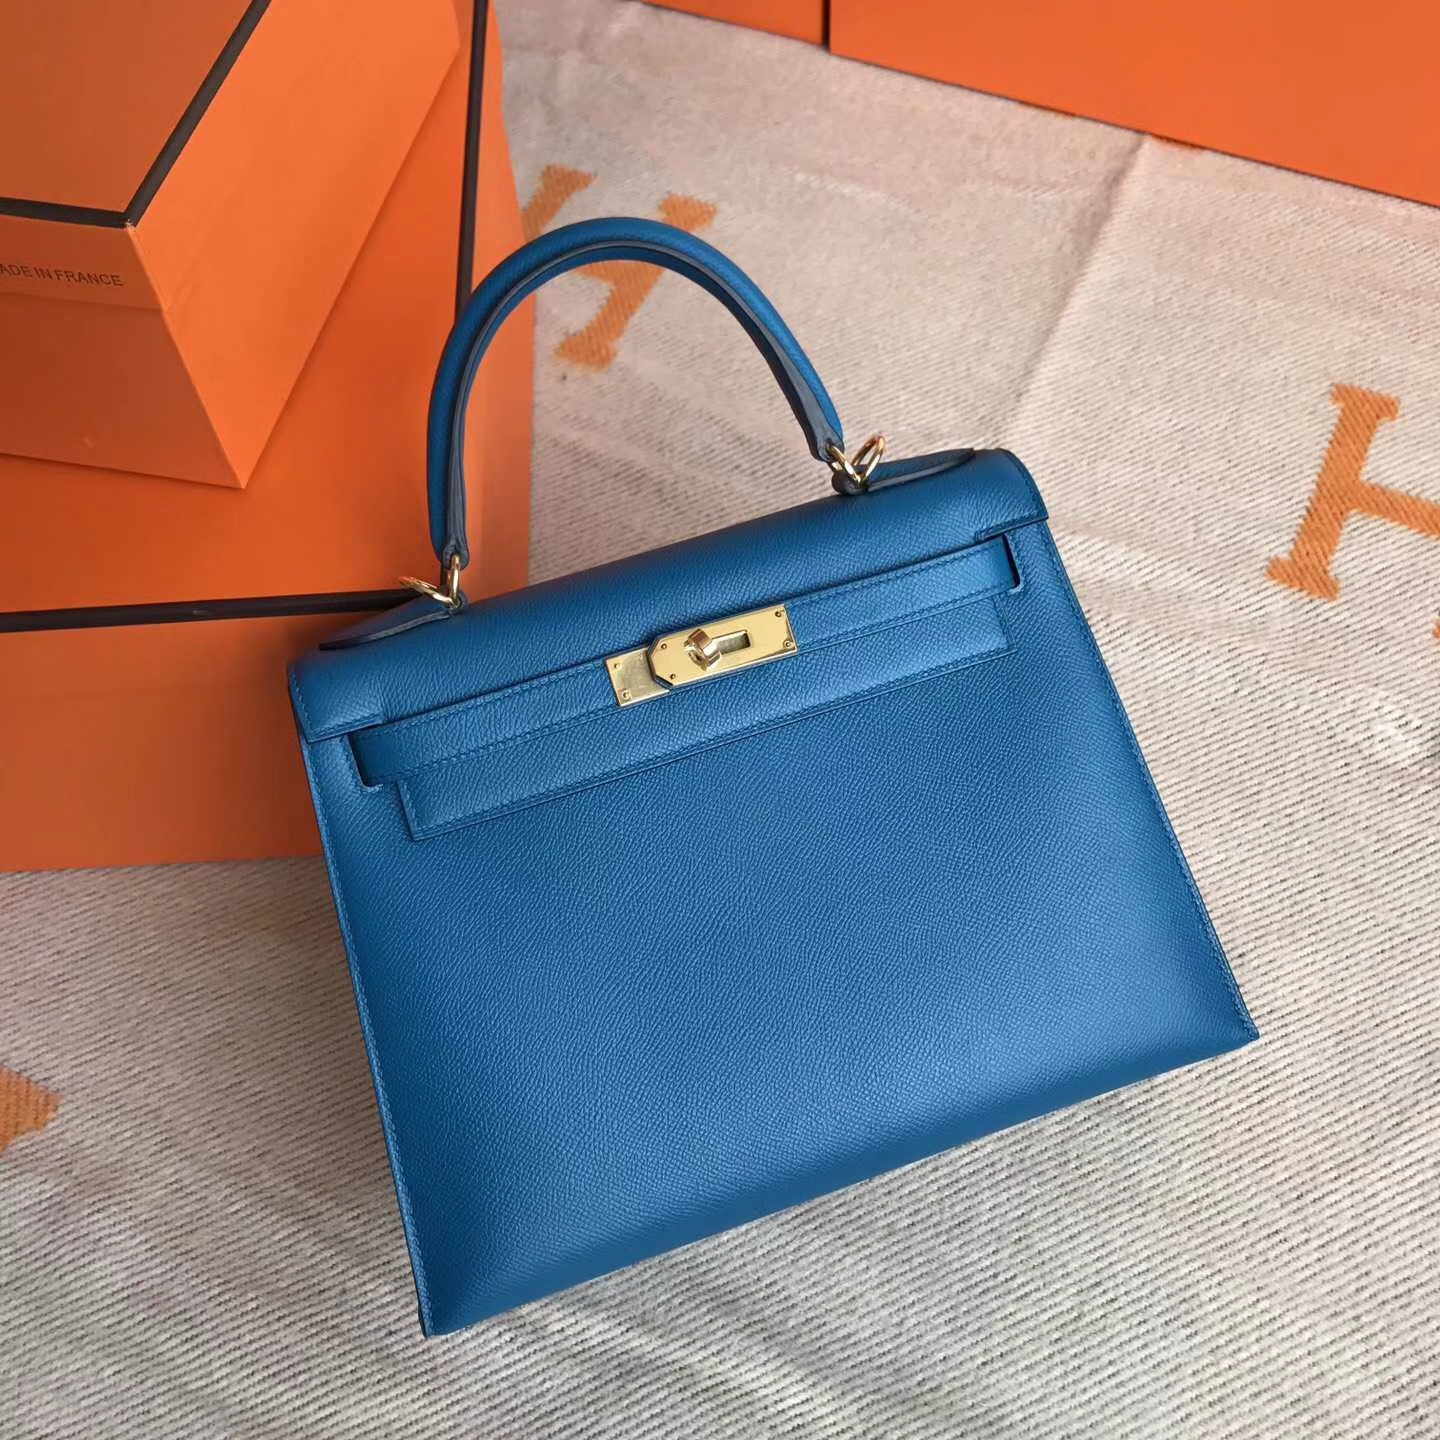 Cheap Hermes Kelly28cm Bag in 7W Blue Izmir Epsom Leather Gold Hardware